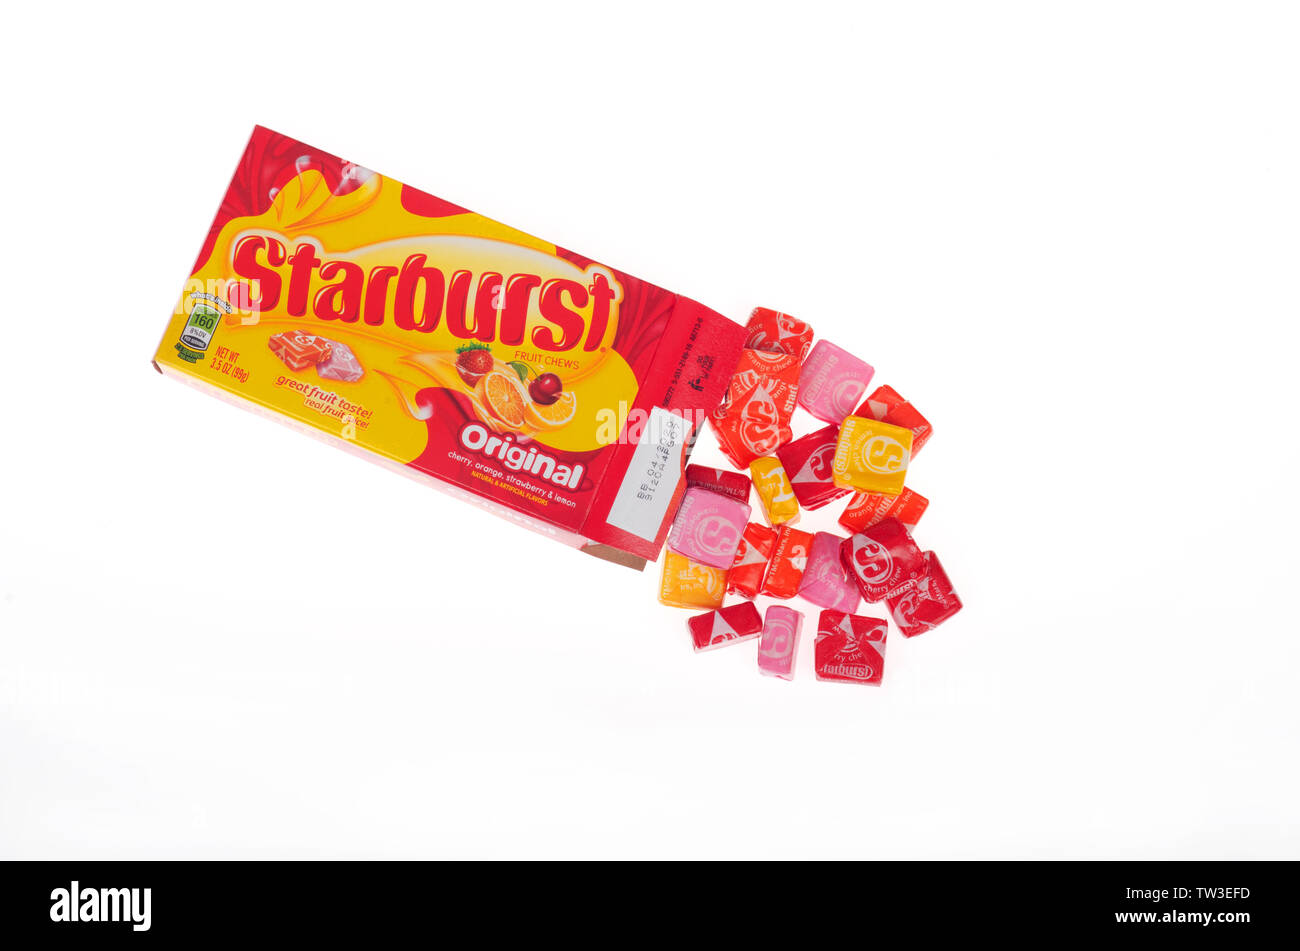 Bonbons Starburst a ouvert la boîte de bonbons enveloppés avec spilling out from mars wrigley sur fond blanc Banque D'Images